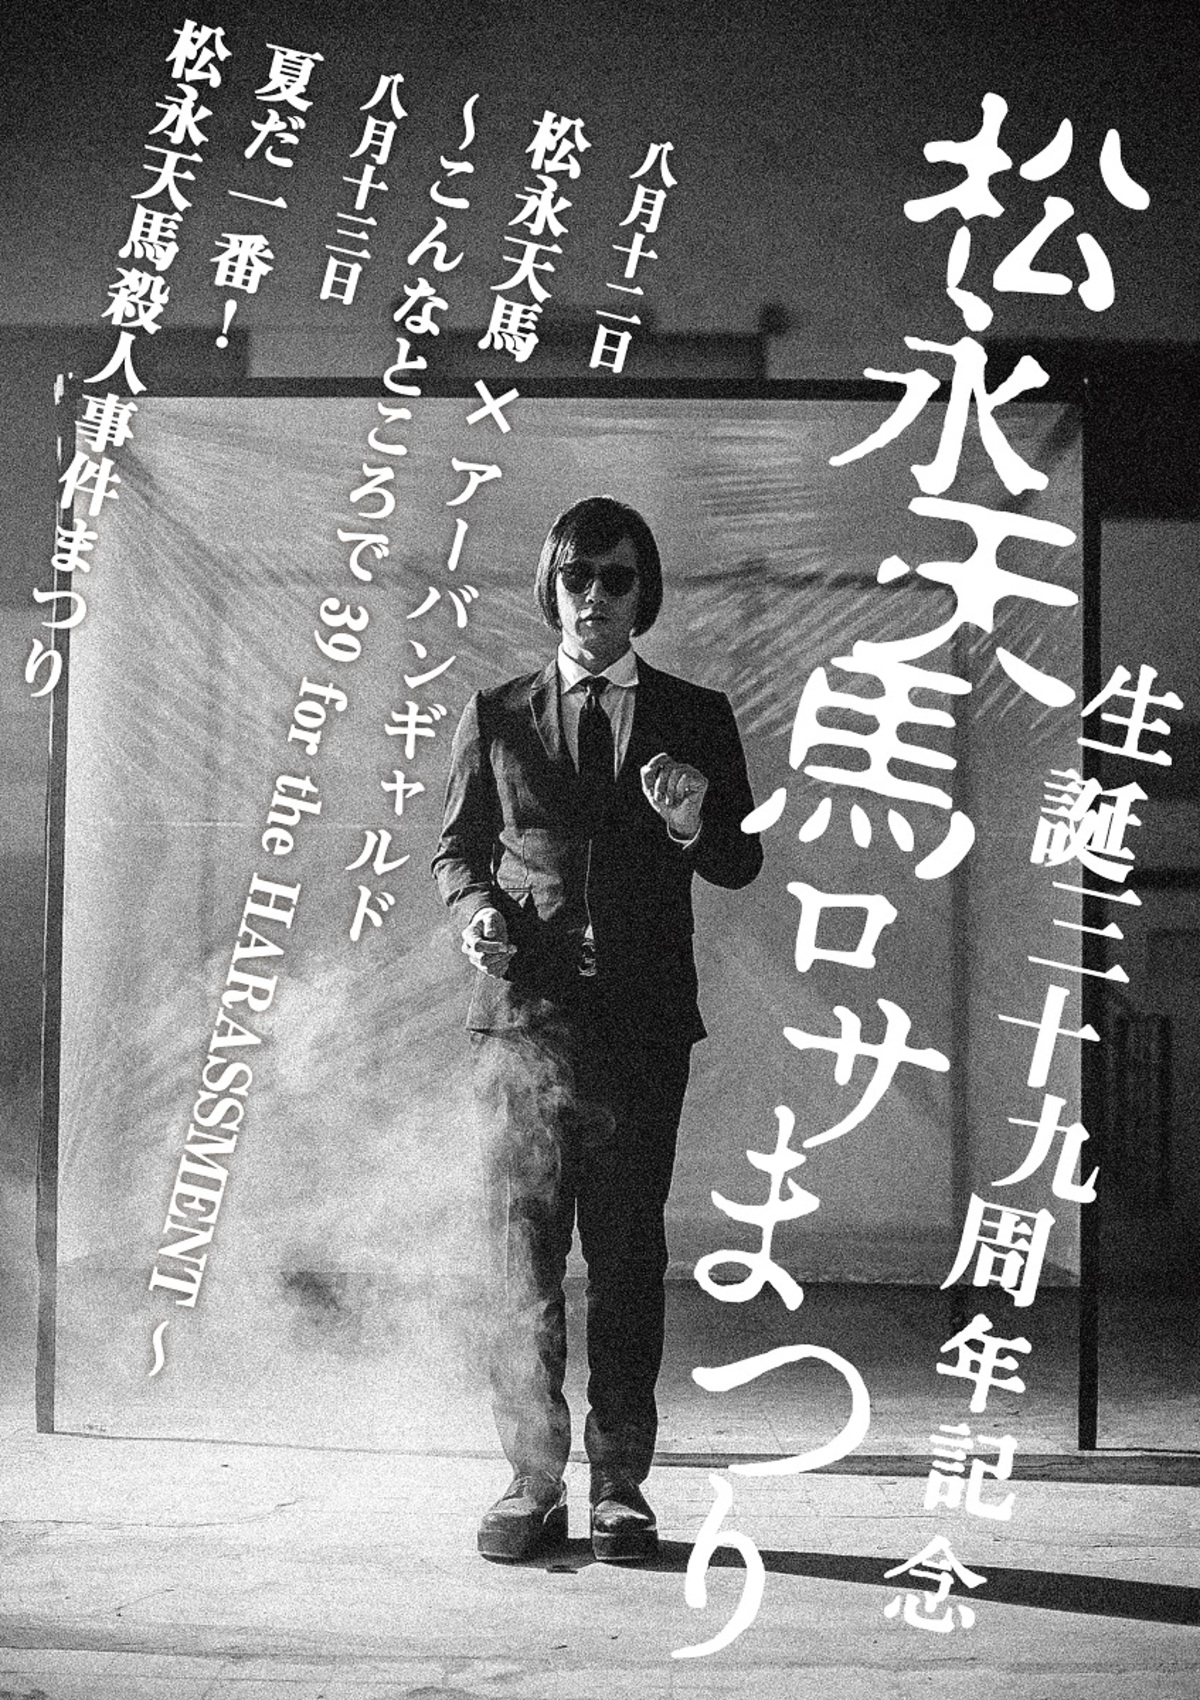 松永天馬 アーバンギャルド ライヴと映画で生誕祝う ロサまつり 開催決定